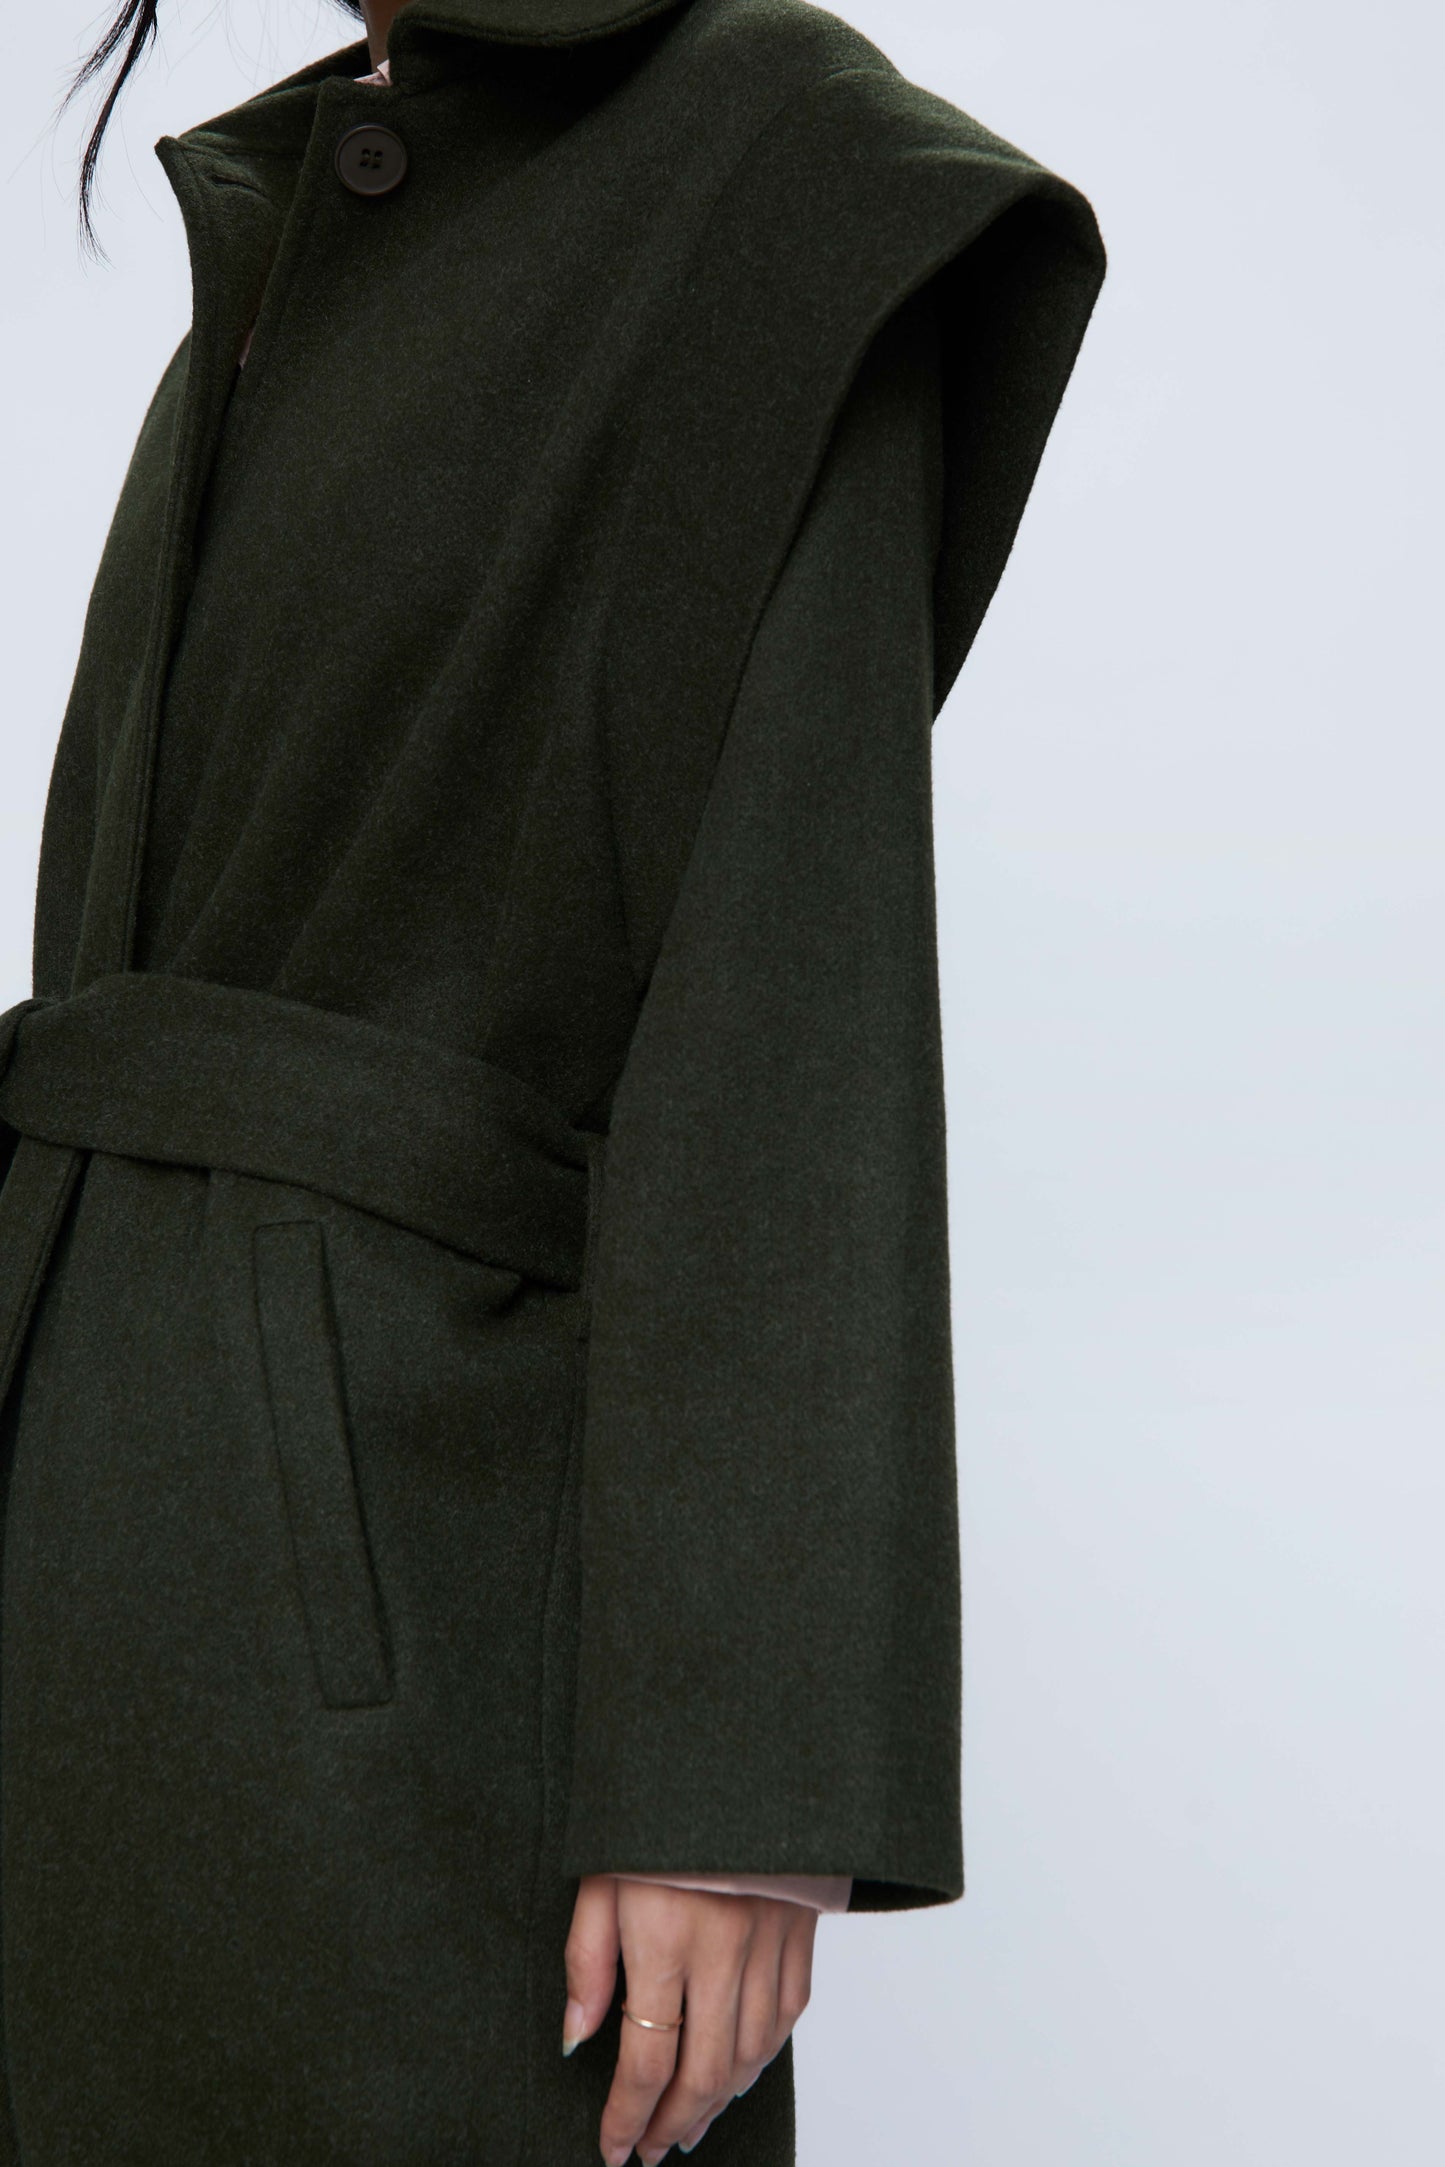 Long coat with black shoulder pads